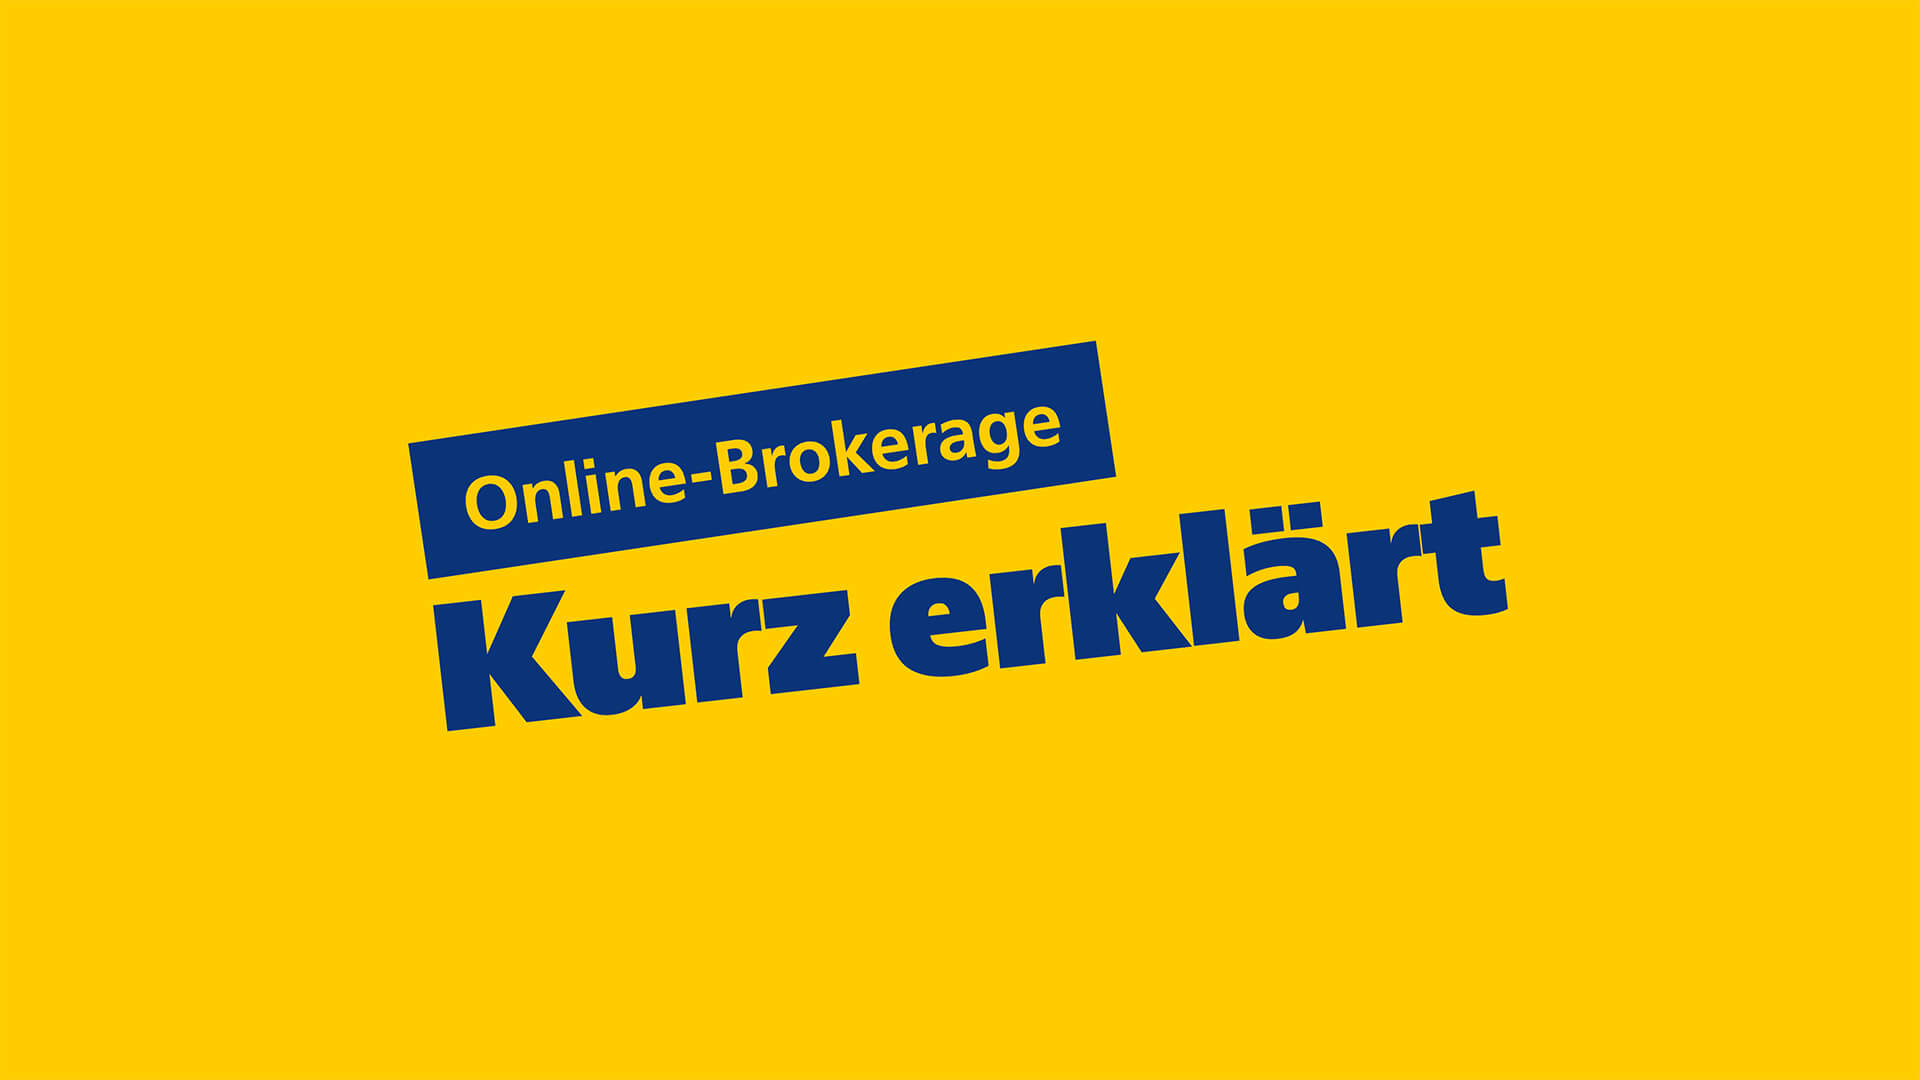 Kurz erklärt „Online-Brokerage“